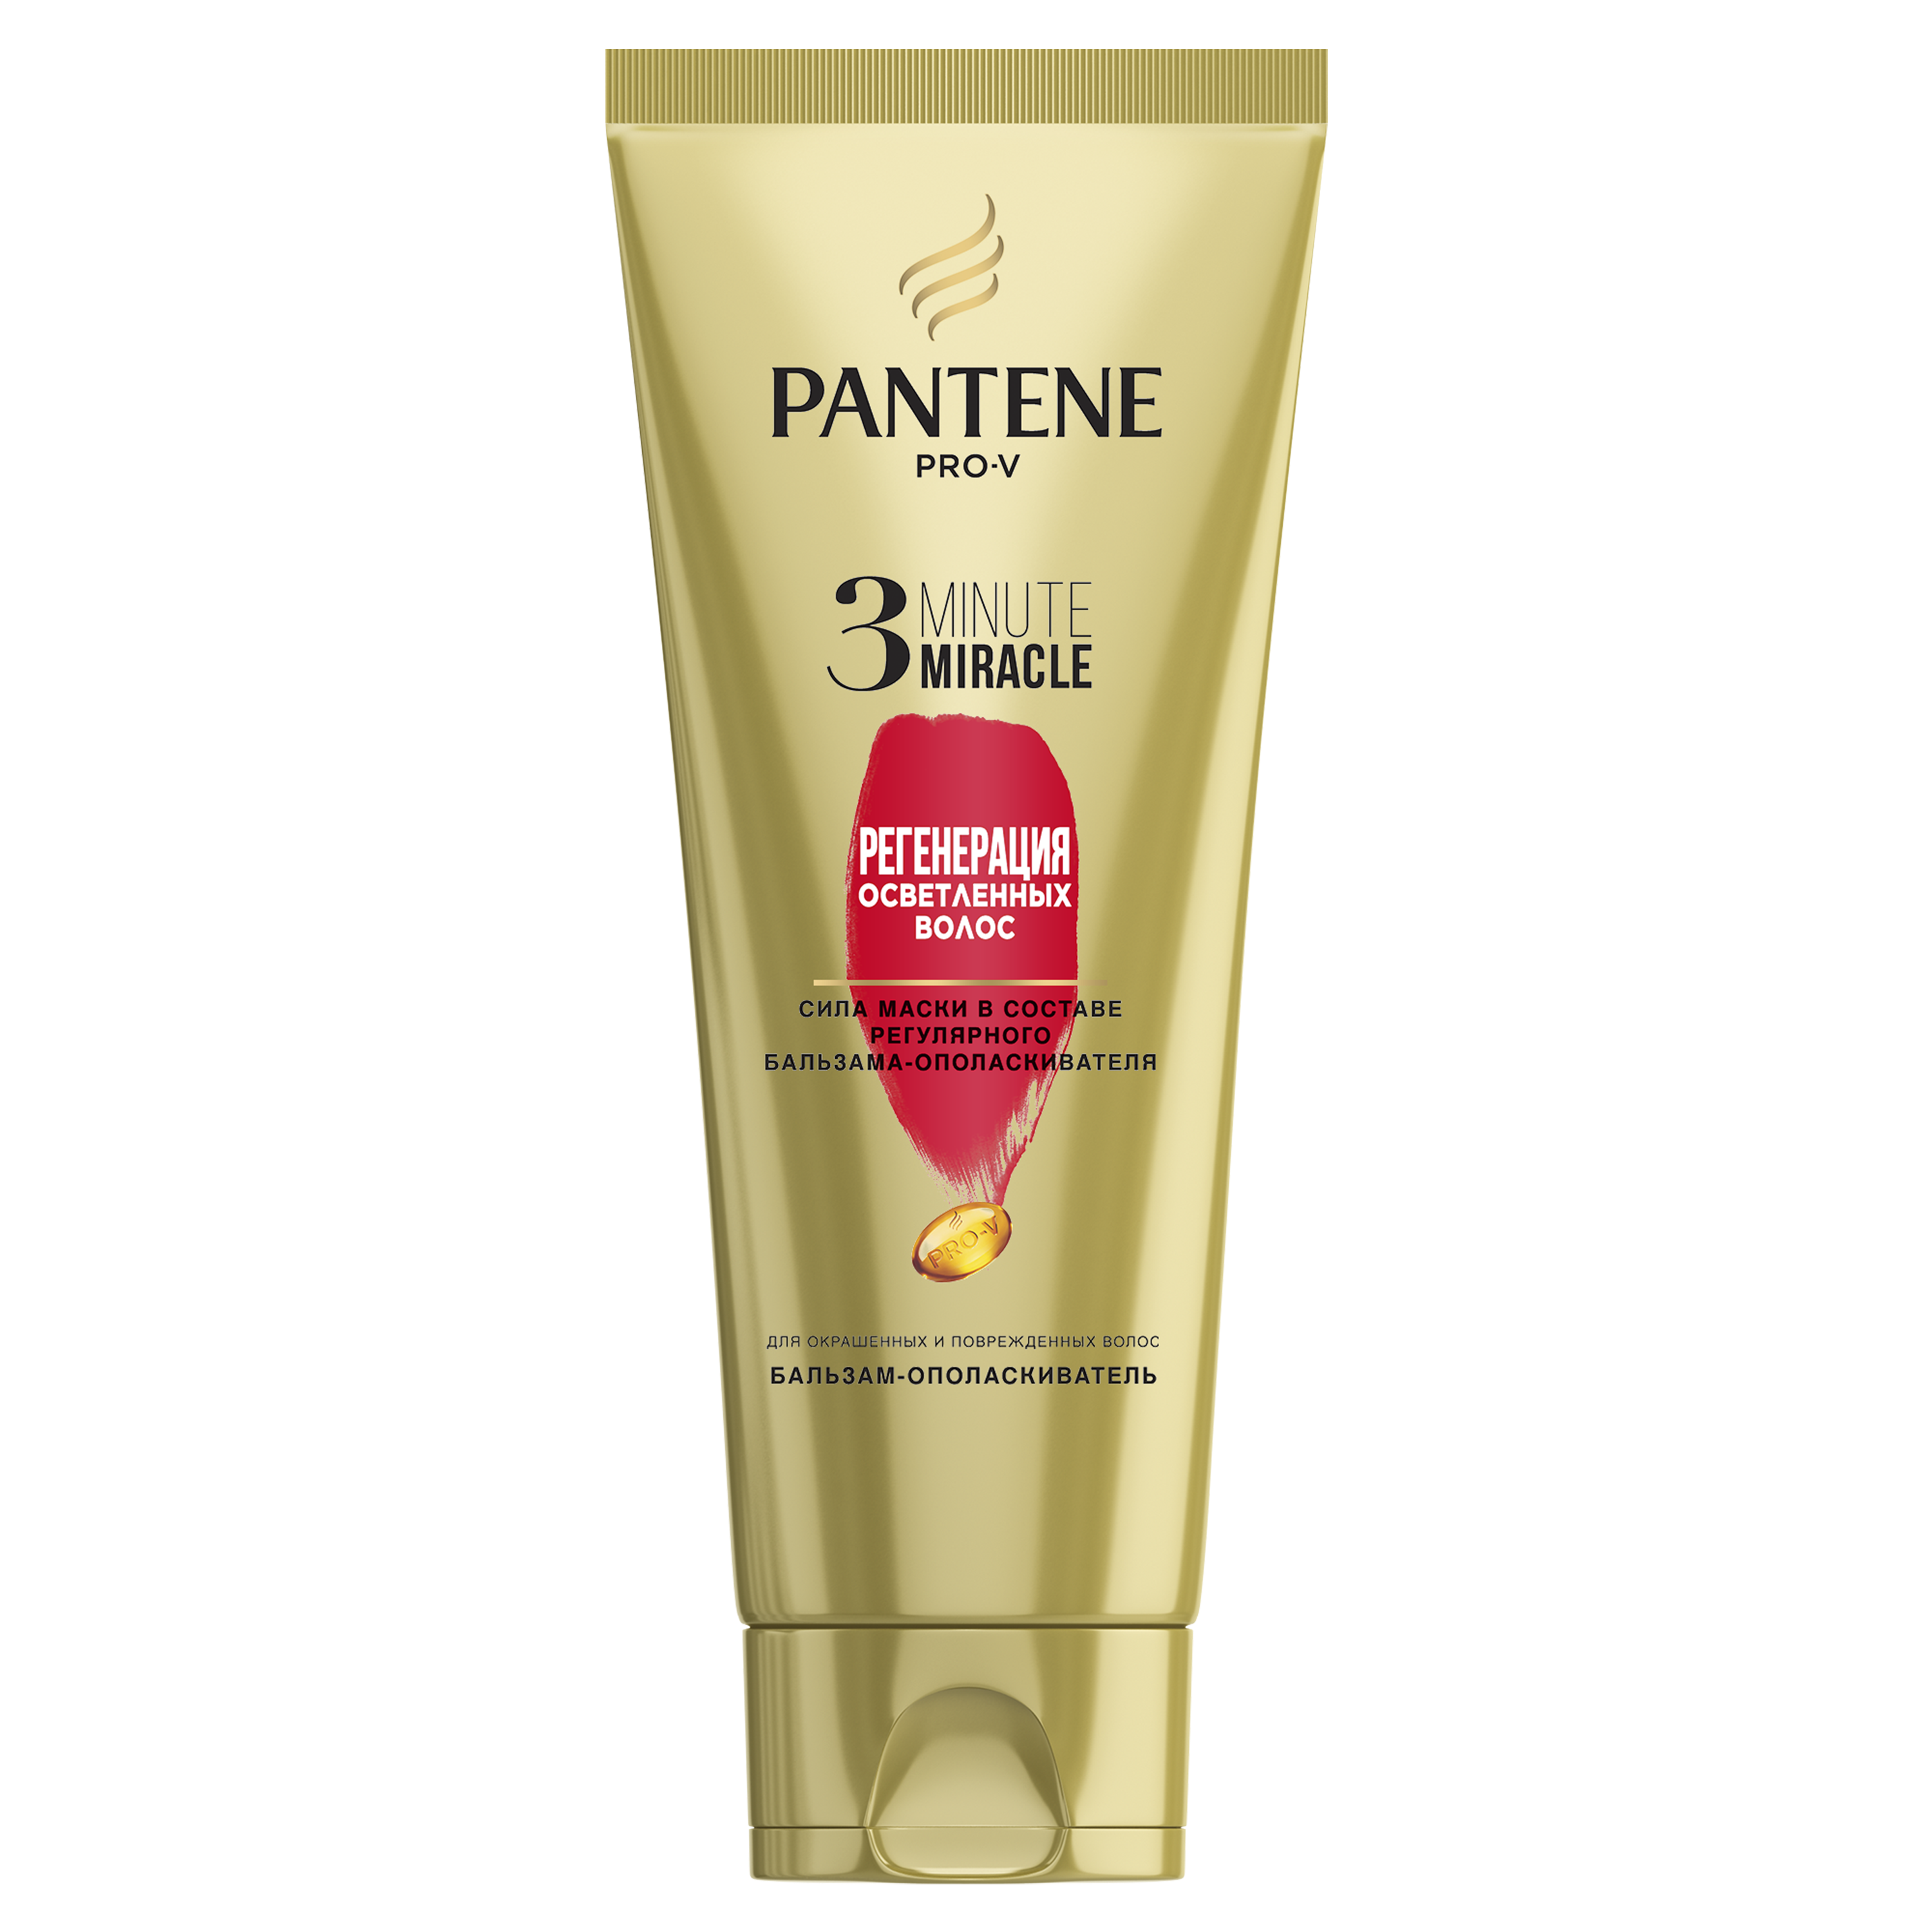 Купить Бальзам-ополаскиватель PANTENE 3 Minute Miracle Регенерация осветленных волос 200мл, Франция